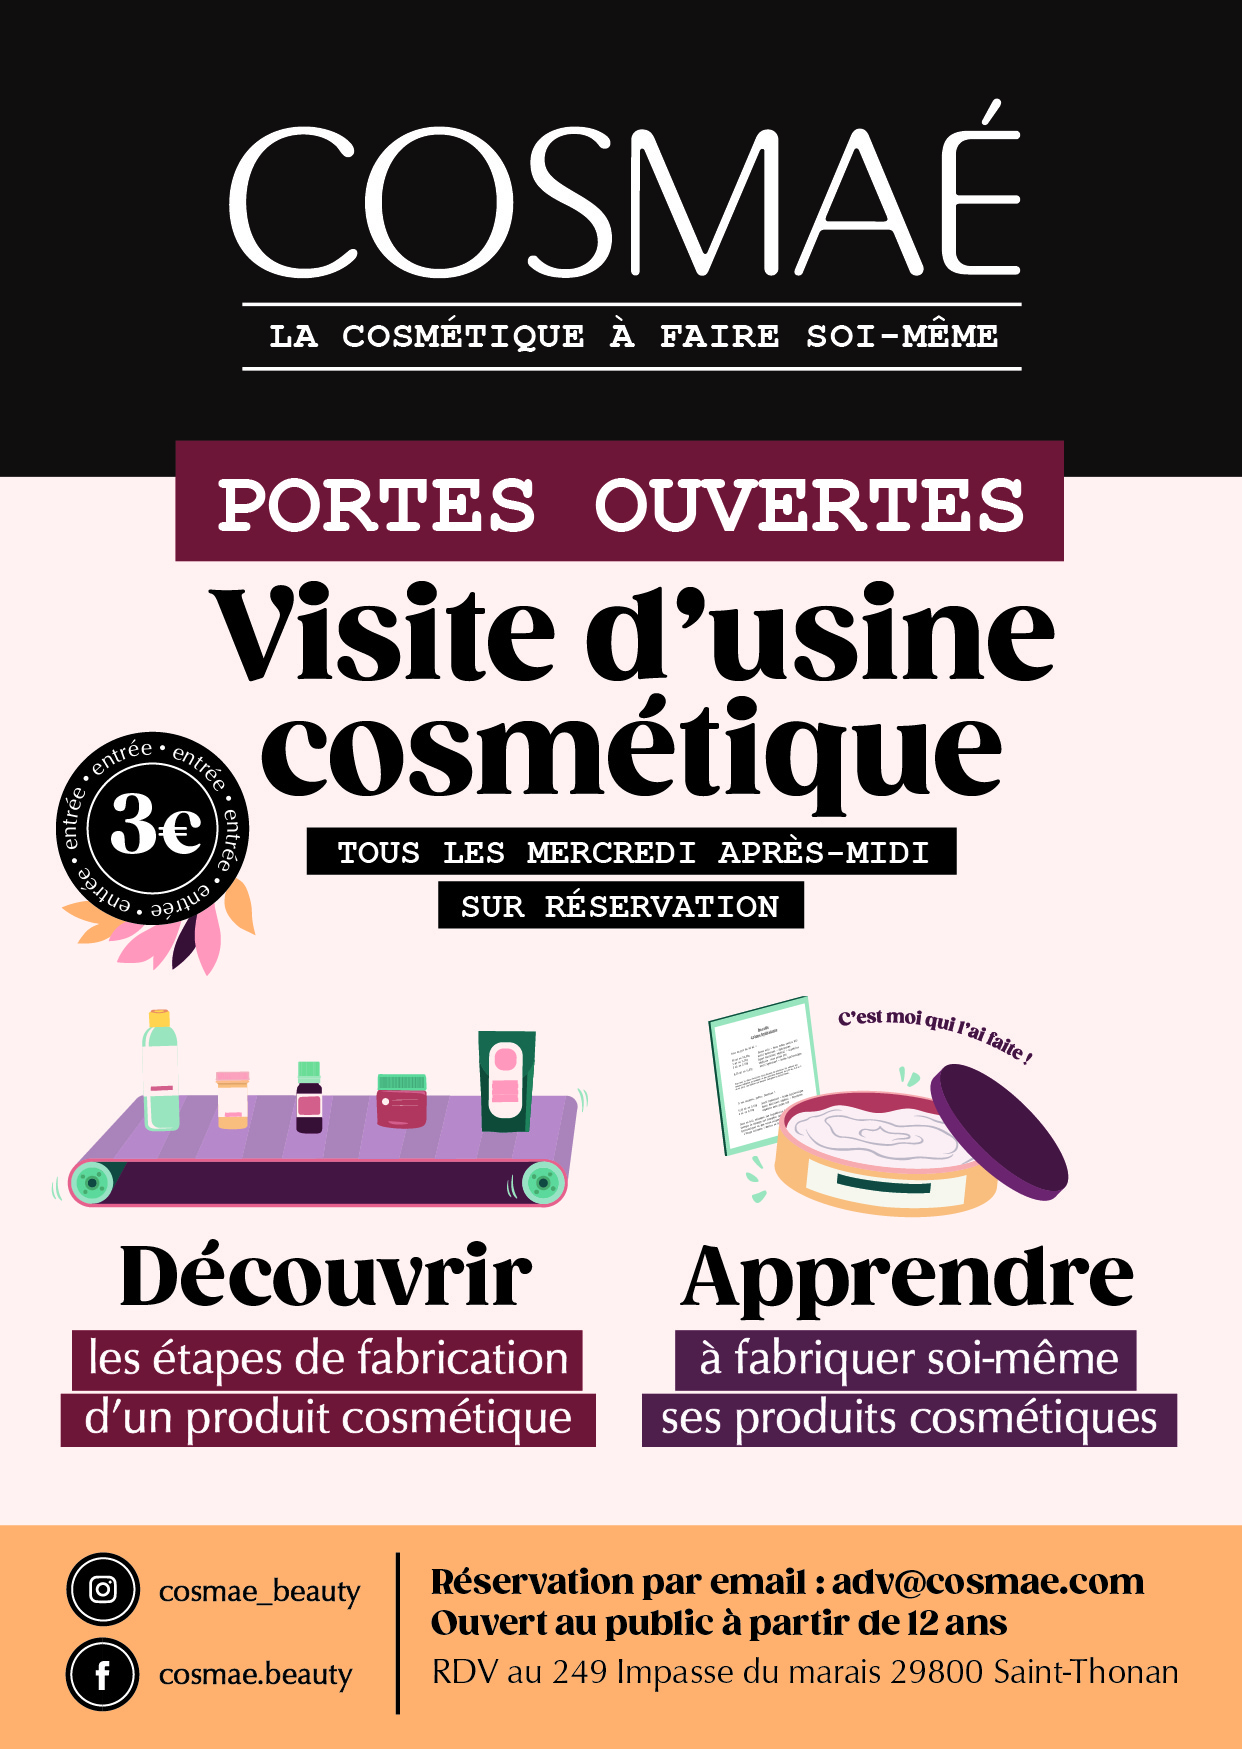 Image Cosmaé, fabricant d'ingrédients cosmétiques ouvre ses portes